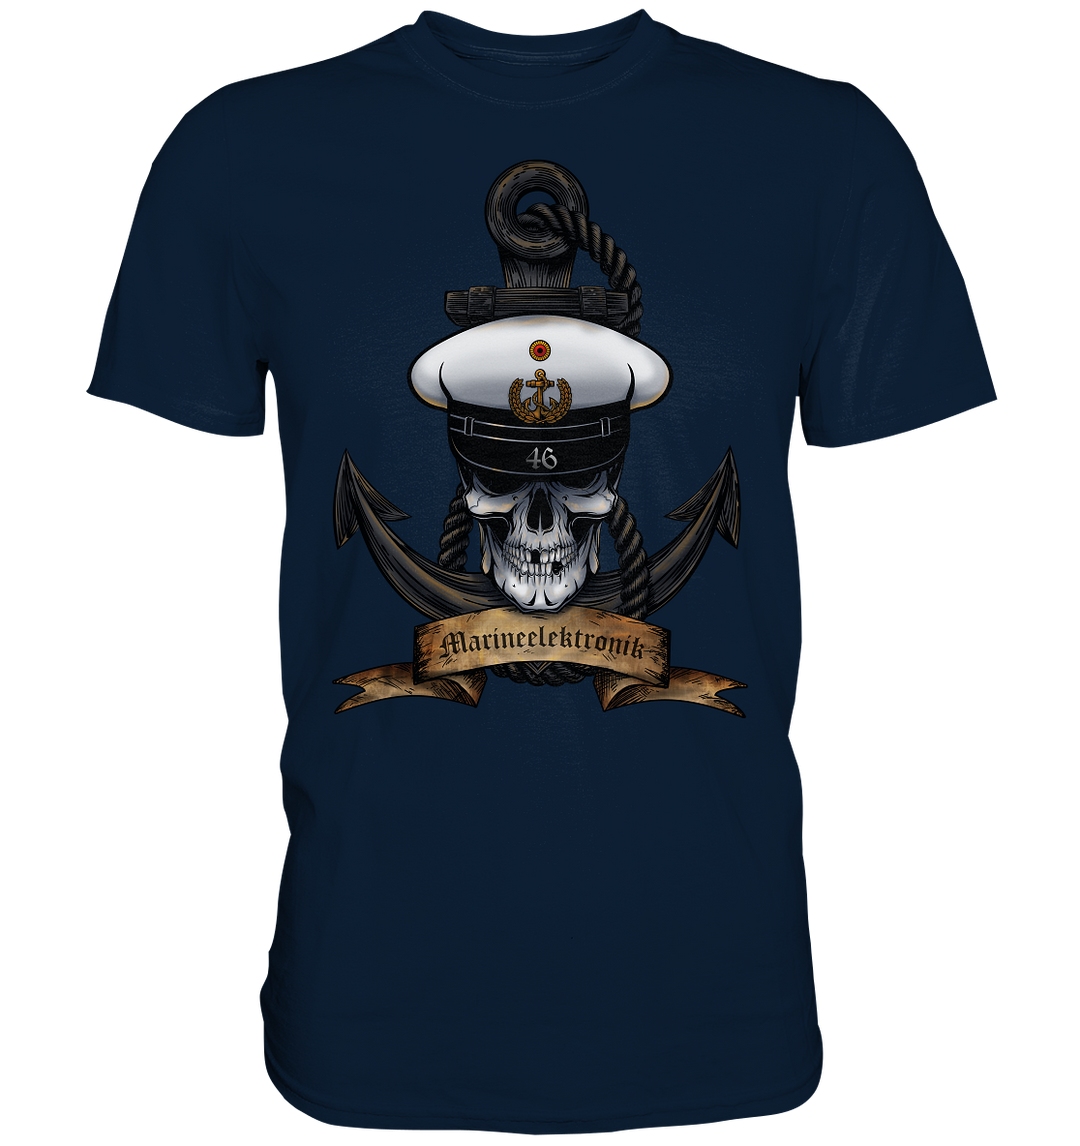 "Marine 46 - Marineelektronik" - Premium Shirt